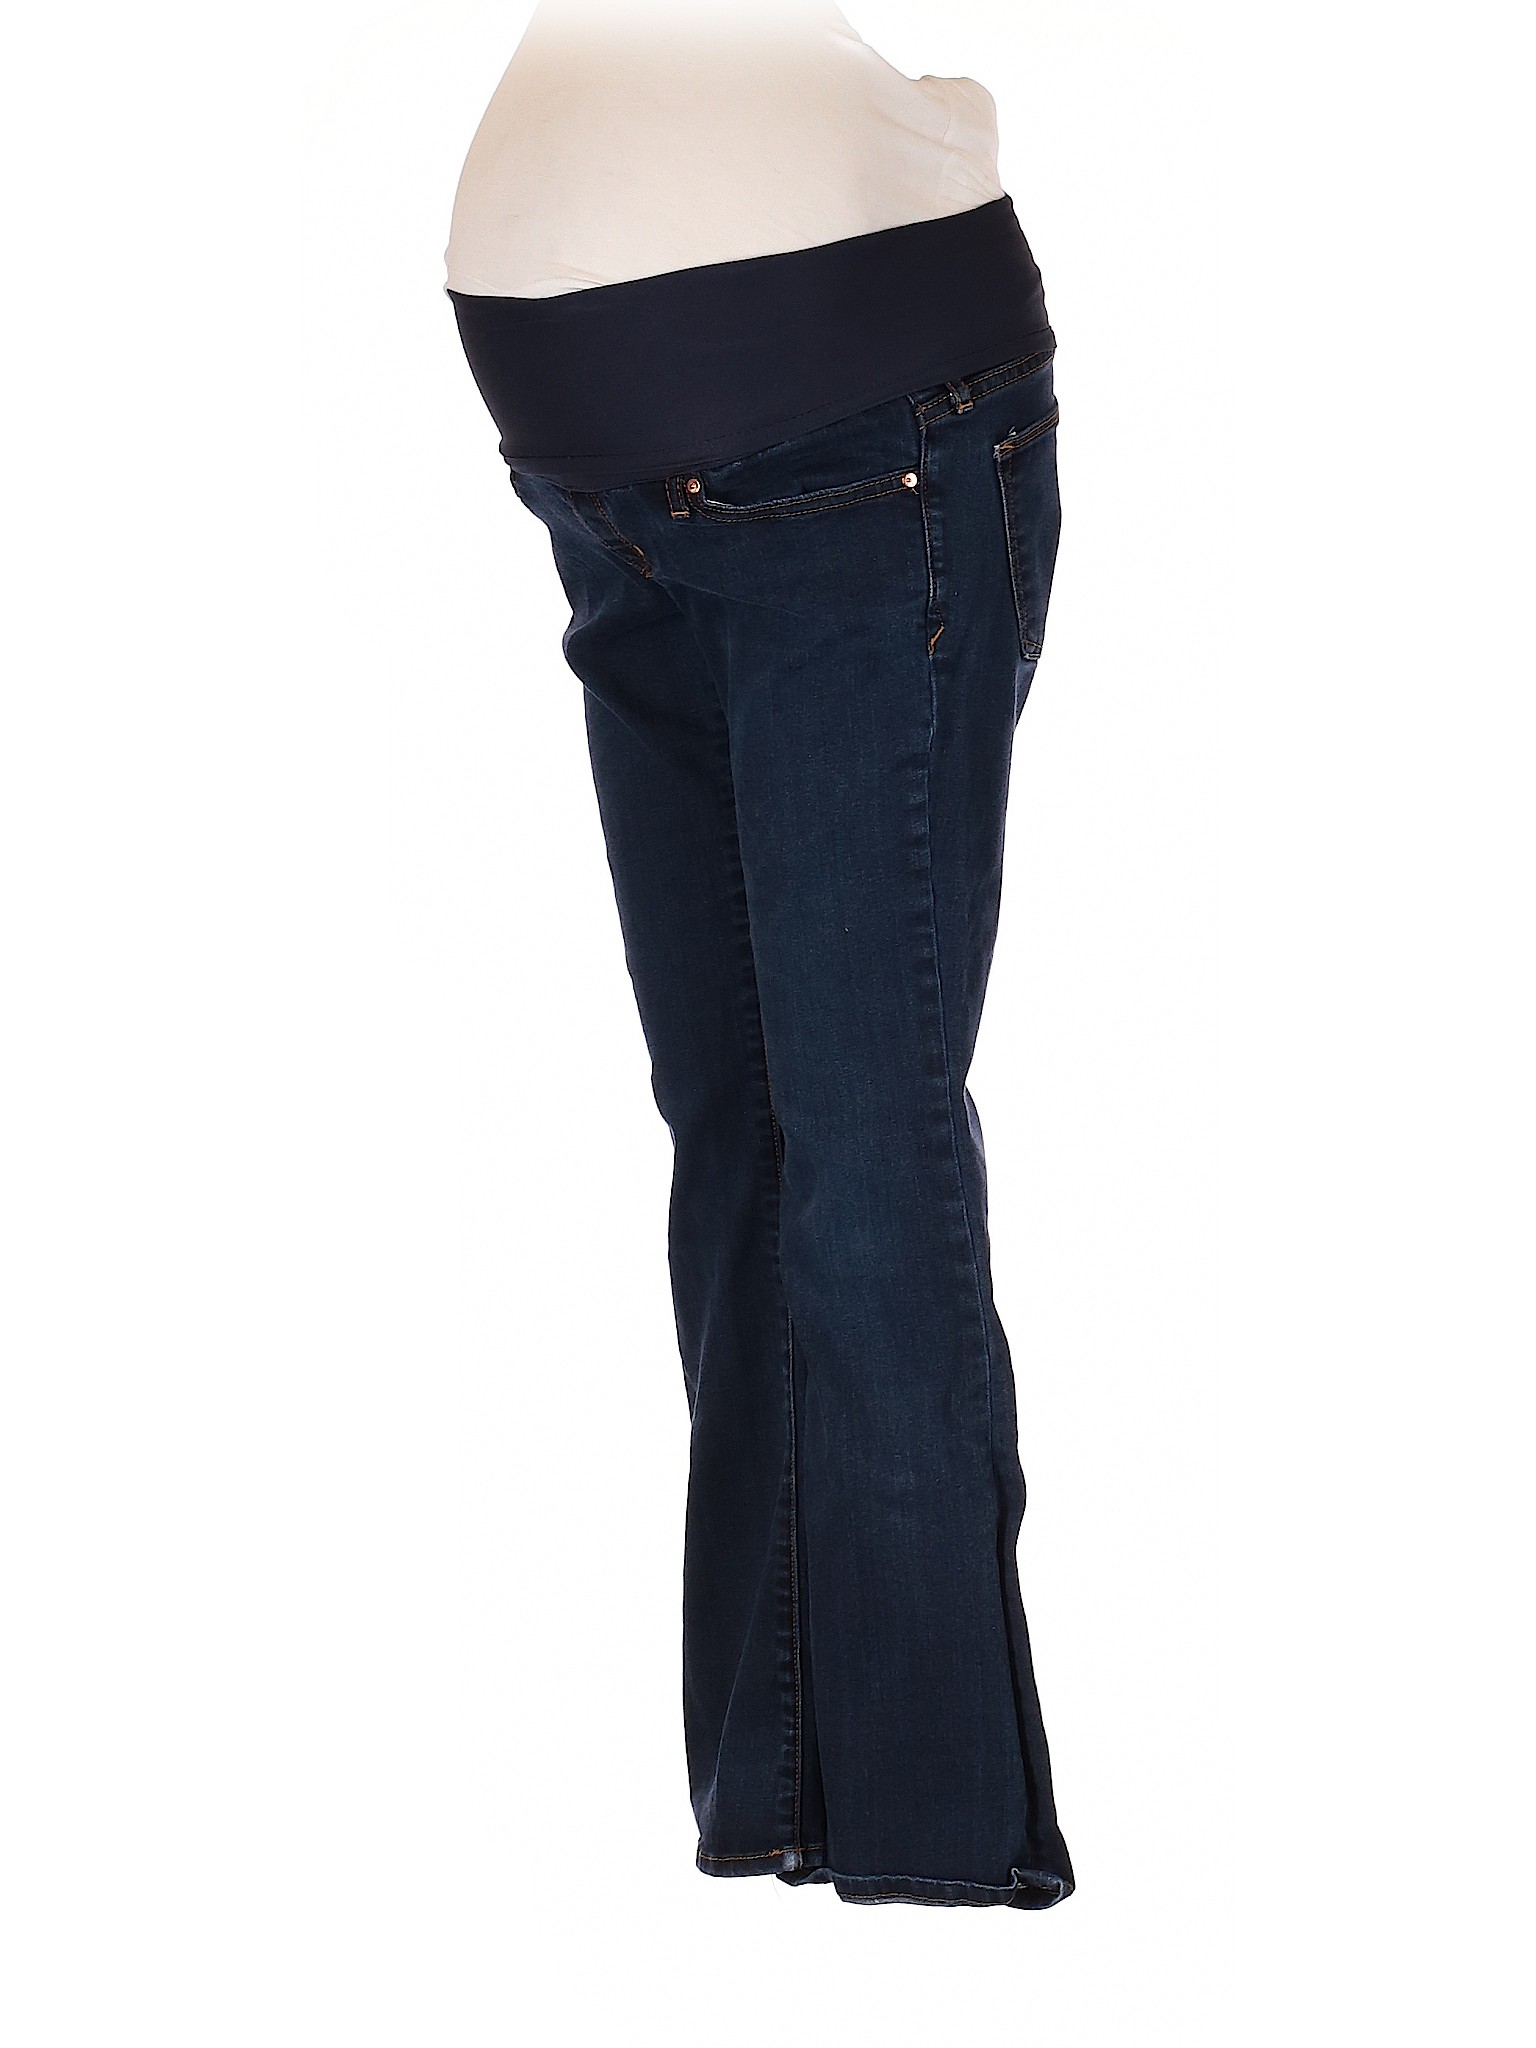 Gap - Maternity Women Blue Jeans 25 W Maternity | eBay